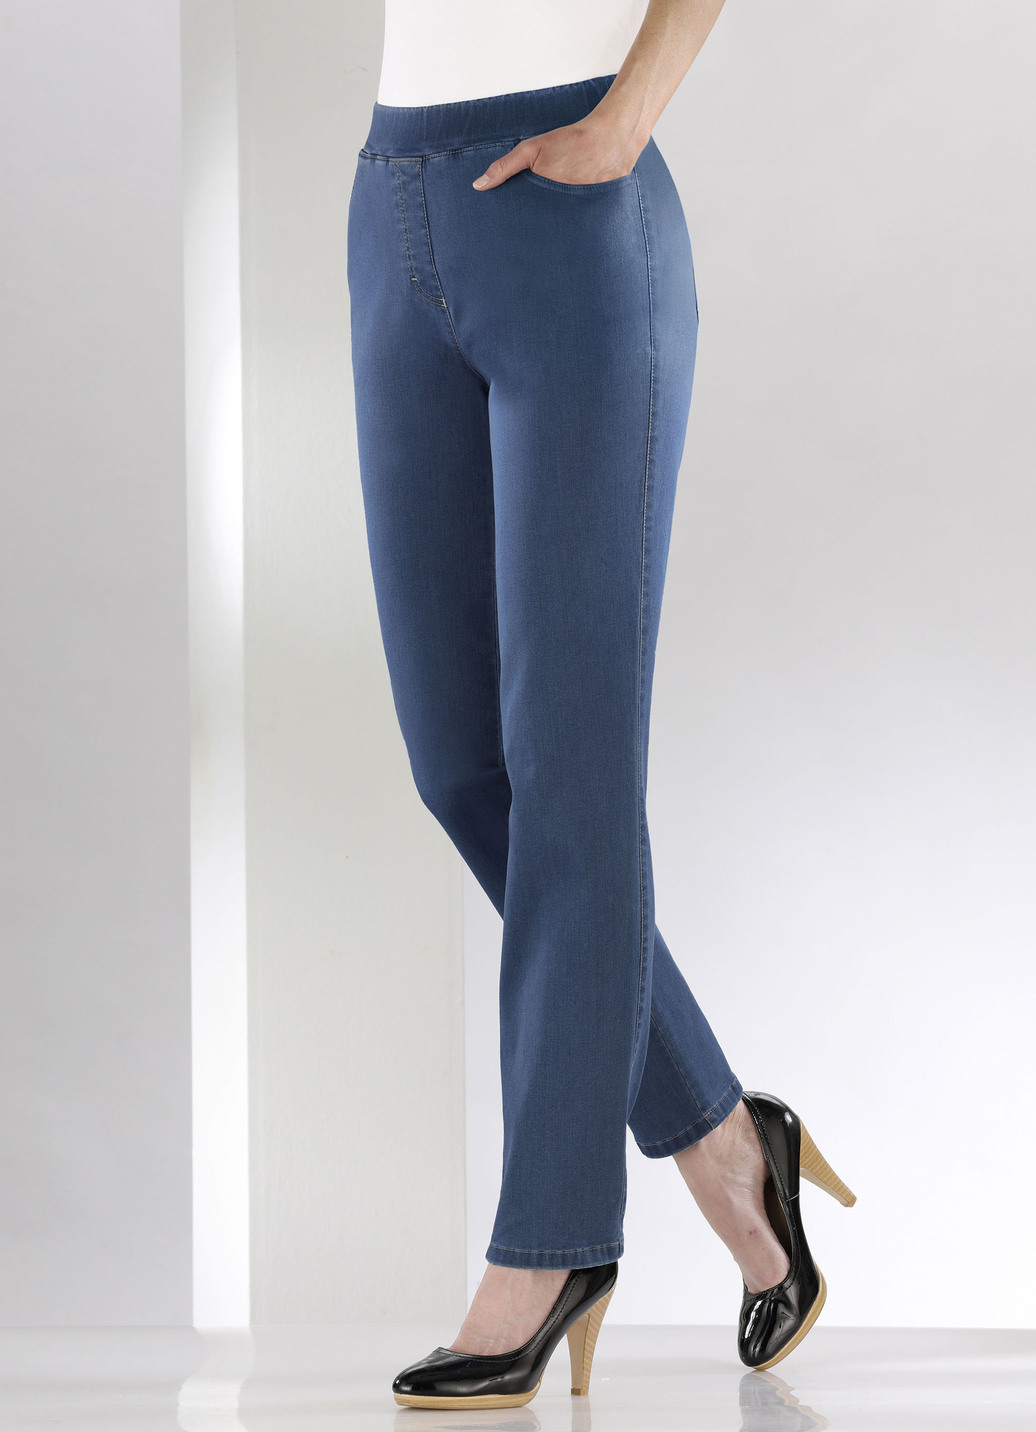 Bauchweg-Jeans in Schlupfform, Jeansblau, Größe 245 von COSMA